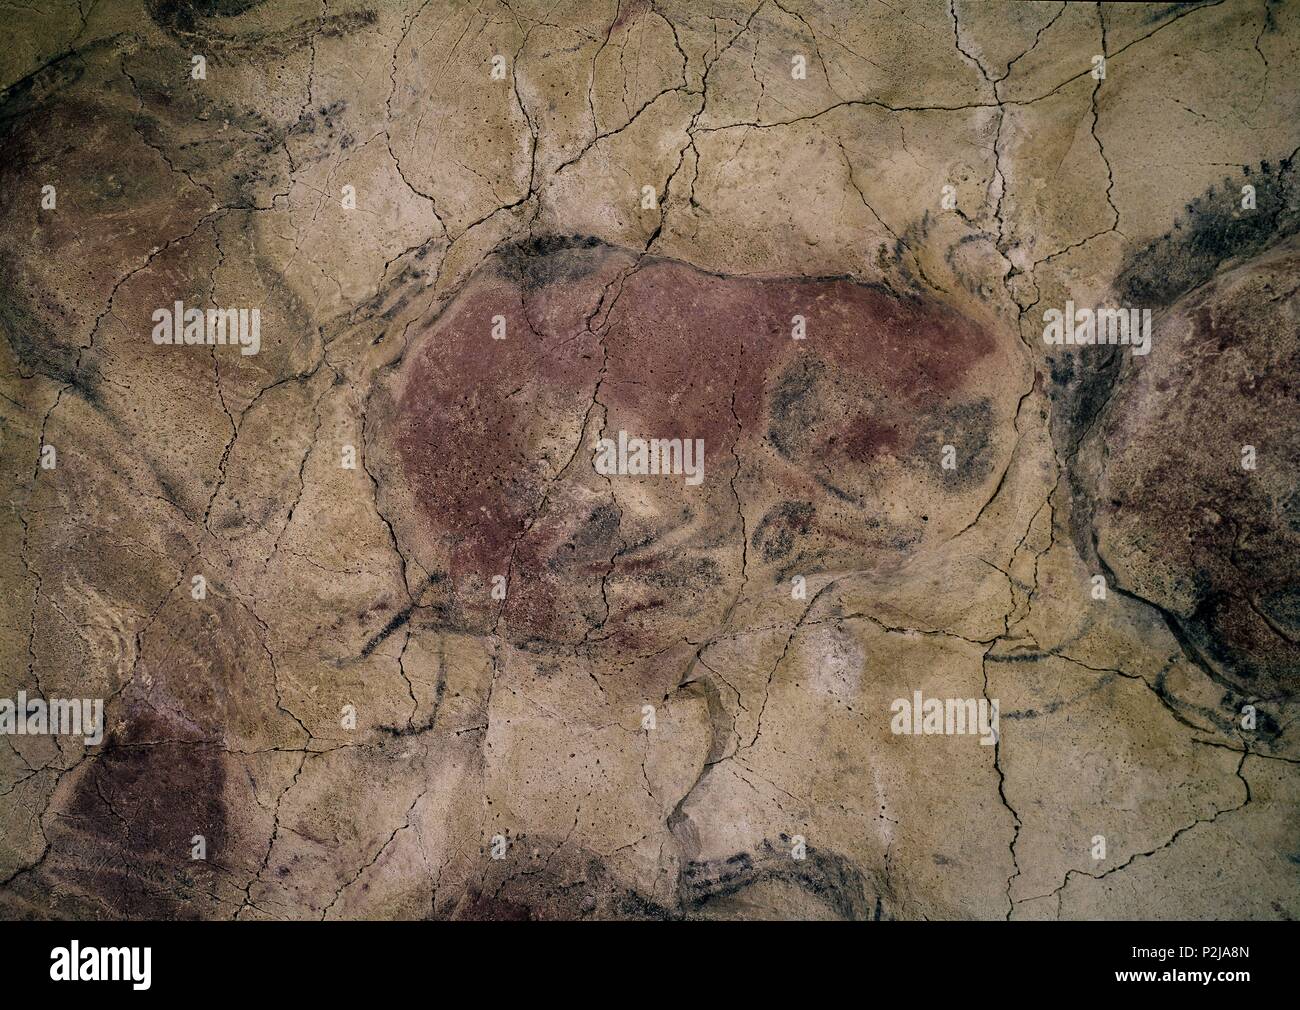 Bison. Cave painting from Altamira. Upper Paleolithic Period. Location:  CUEVAS DE ALTAMIRA, SANTILLANA DEL MAR, SPAIN Stock Photo - Alamy